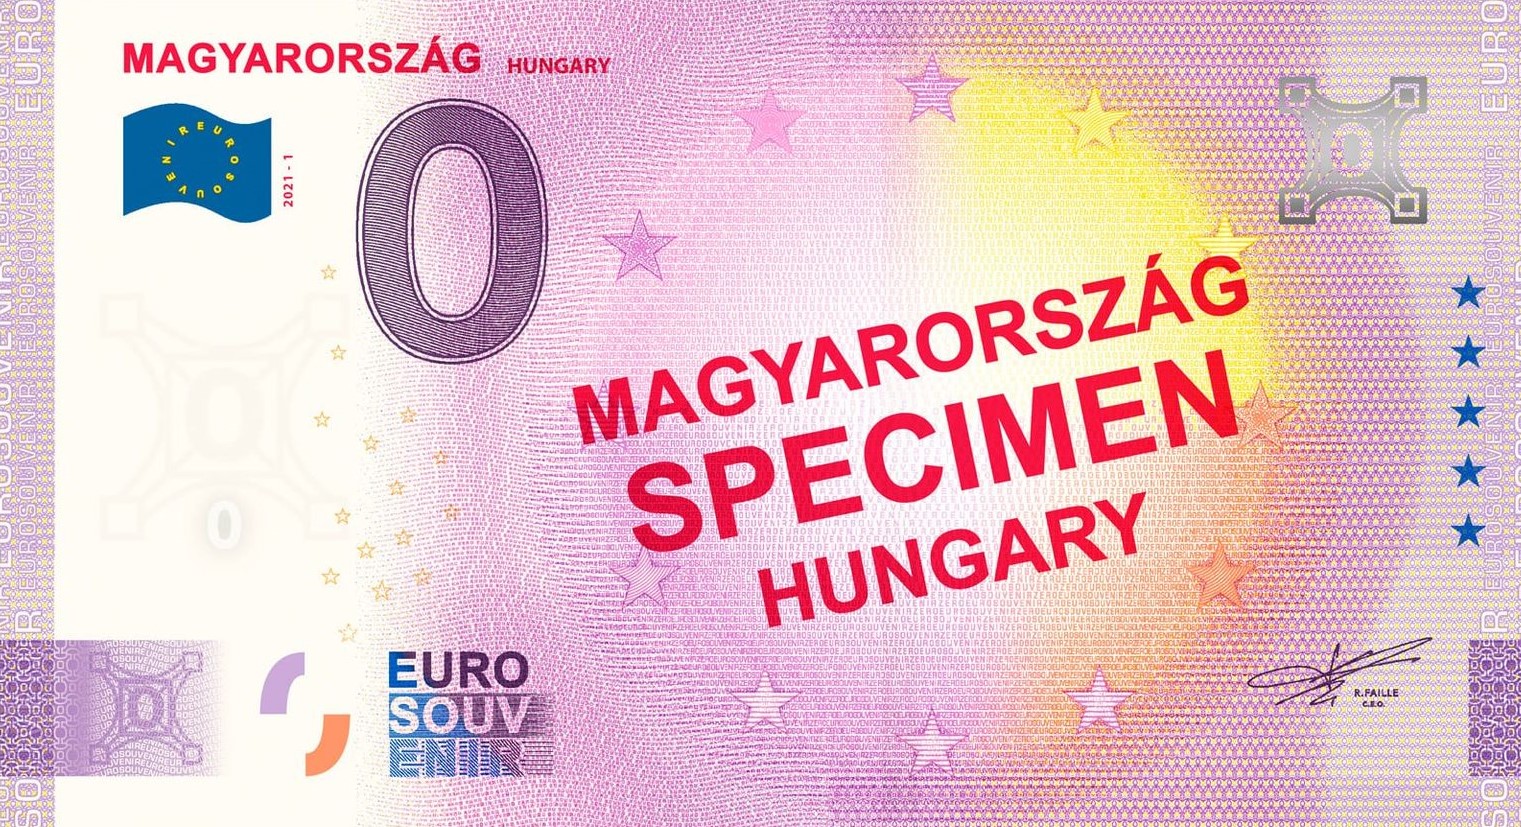 0 Euro Souvenir - MAGYARORSZÁG - SPECIMEN - HUNGARY 2021-1